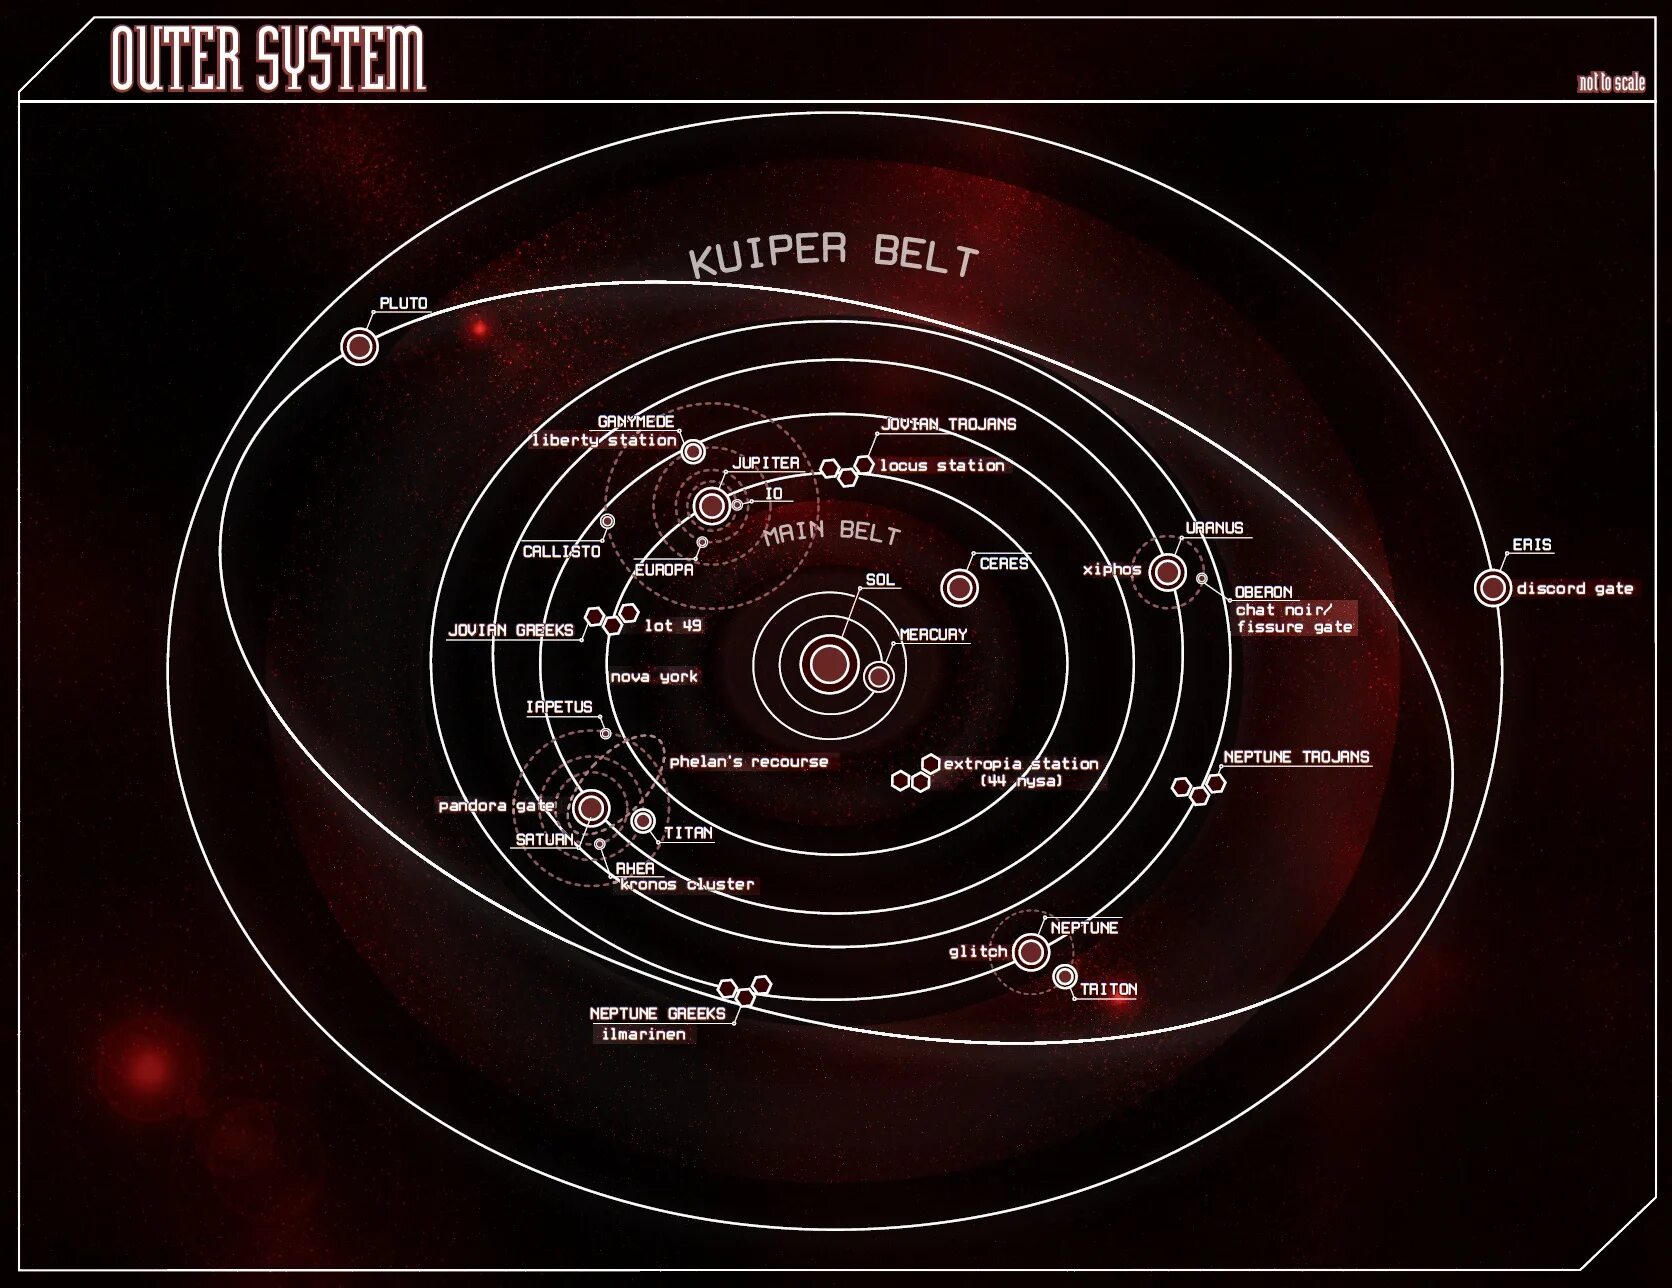 Solar system map. Карта солнечной системы. Астрономия карта солнечной системы. Планеты солнечной системы карта. Модель солнечной системы со спутниками.